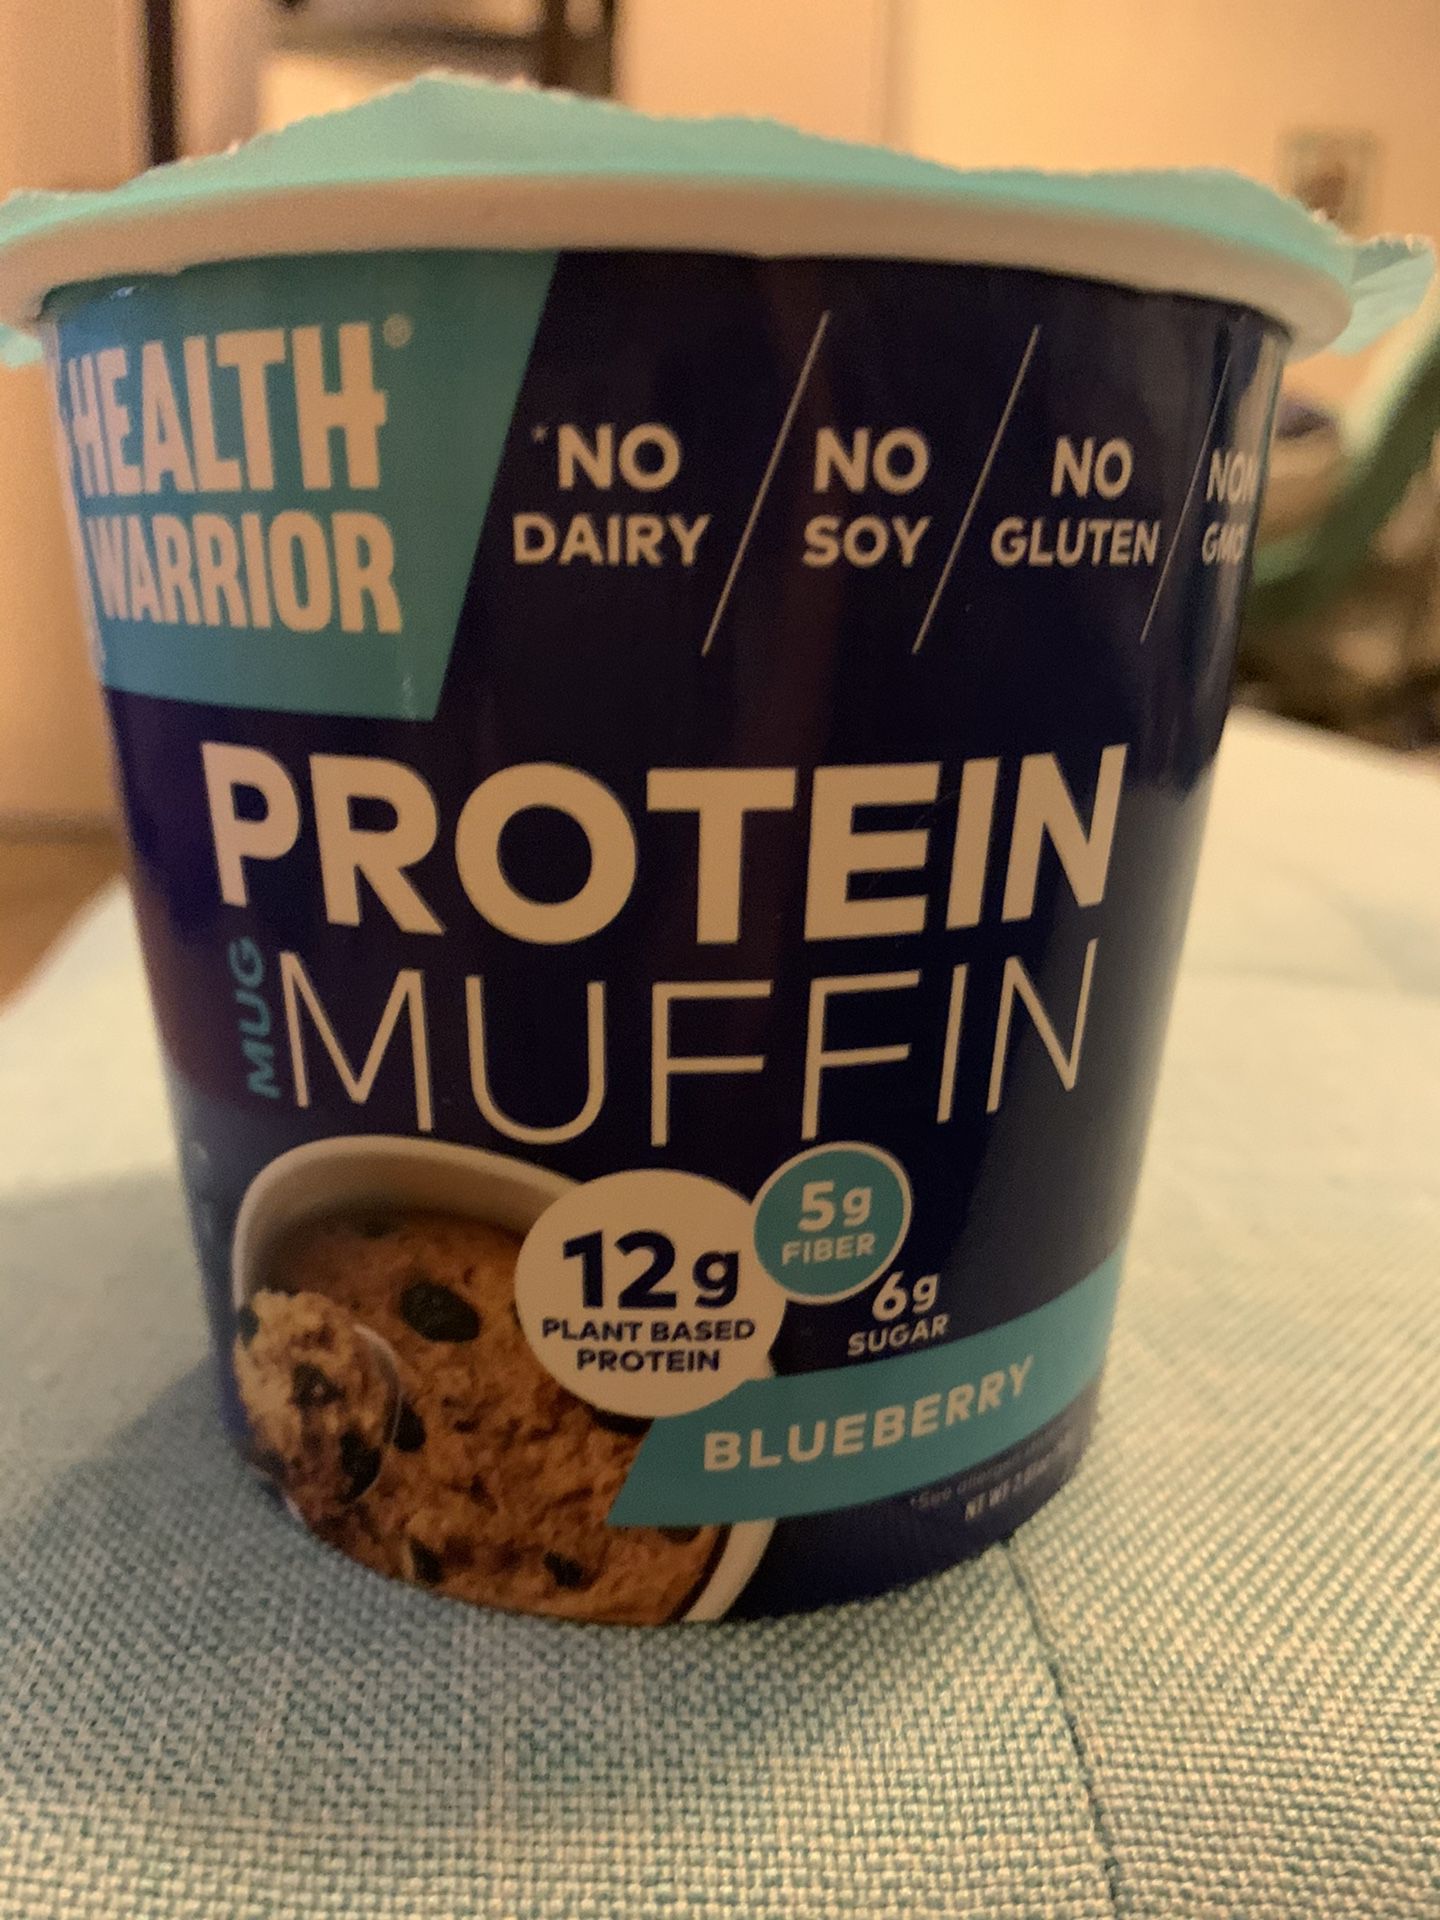 Protein muffin health warrior